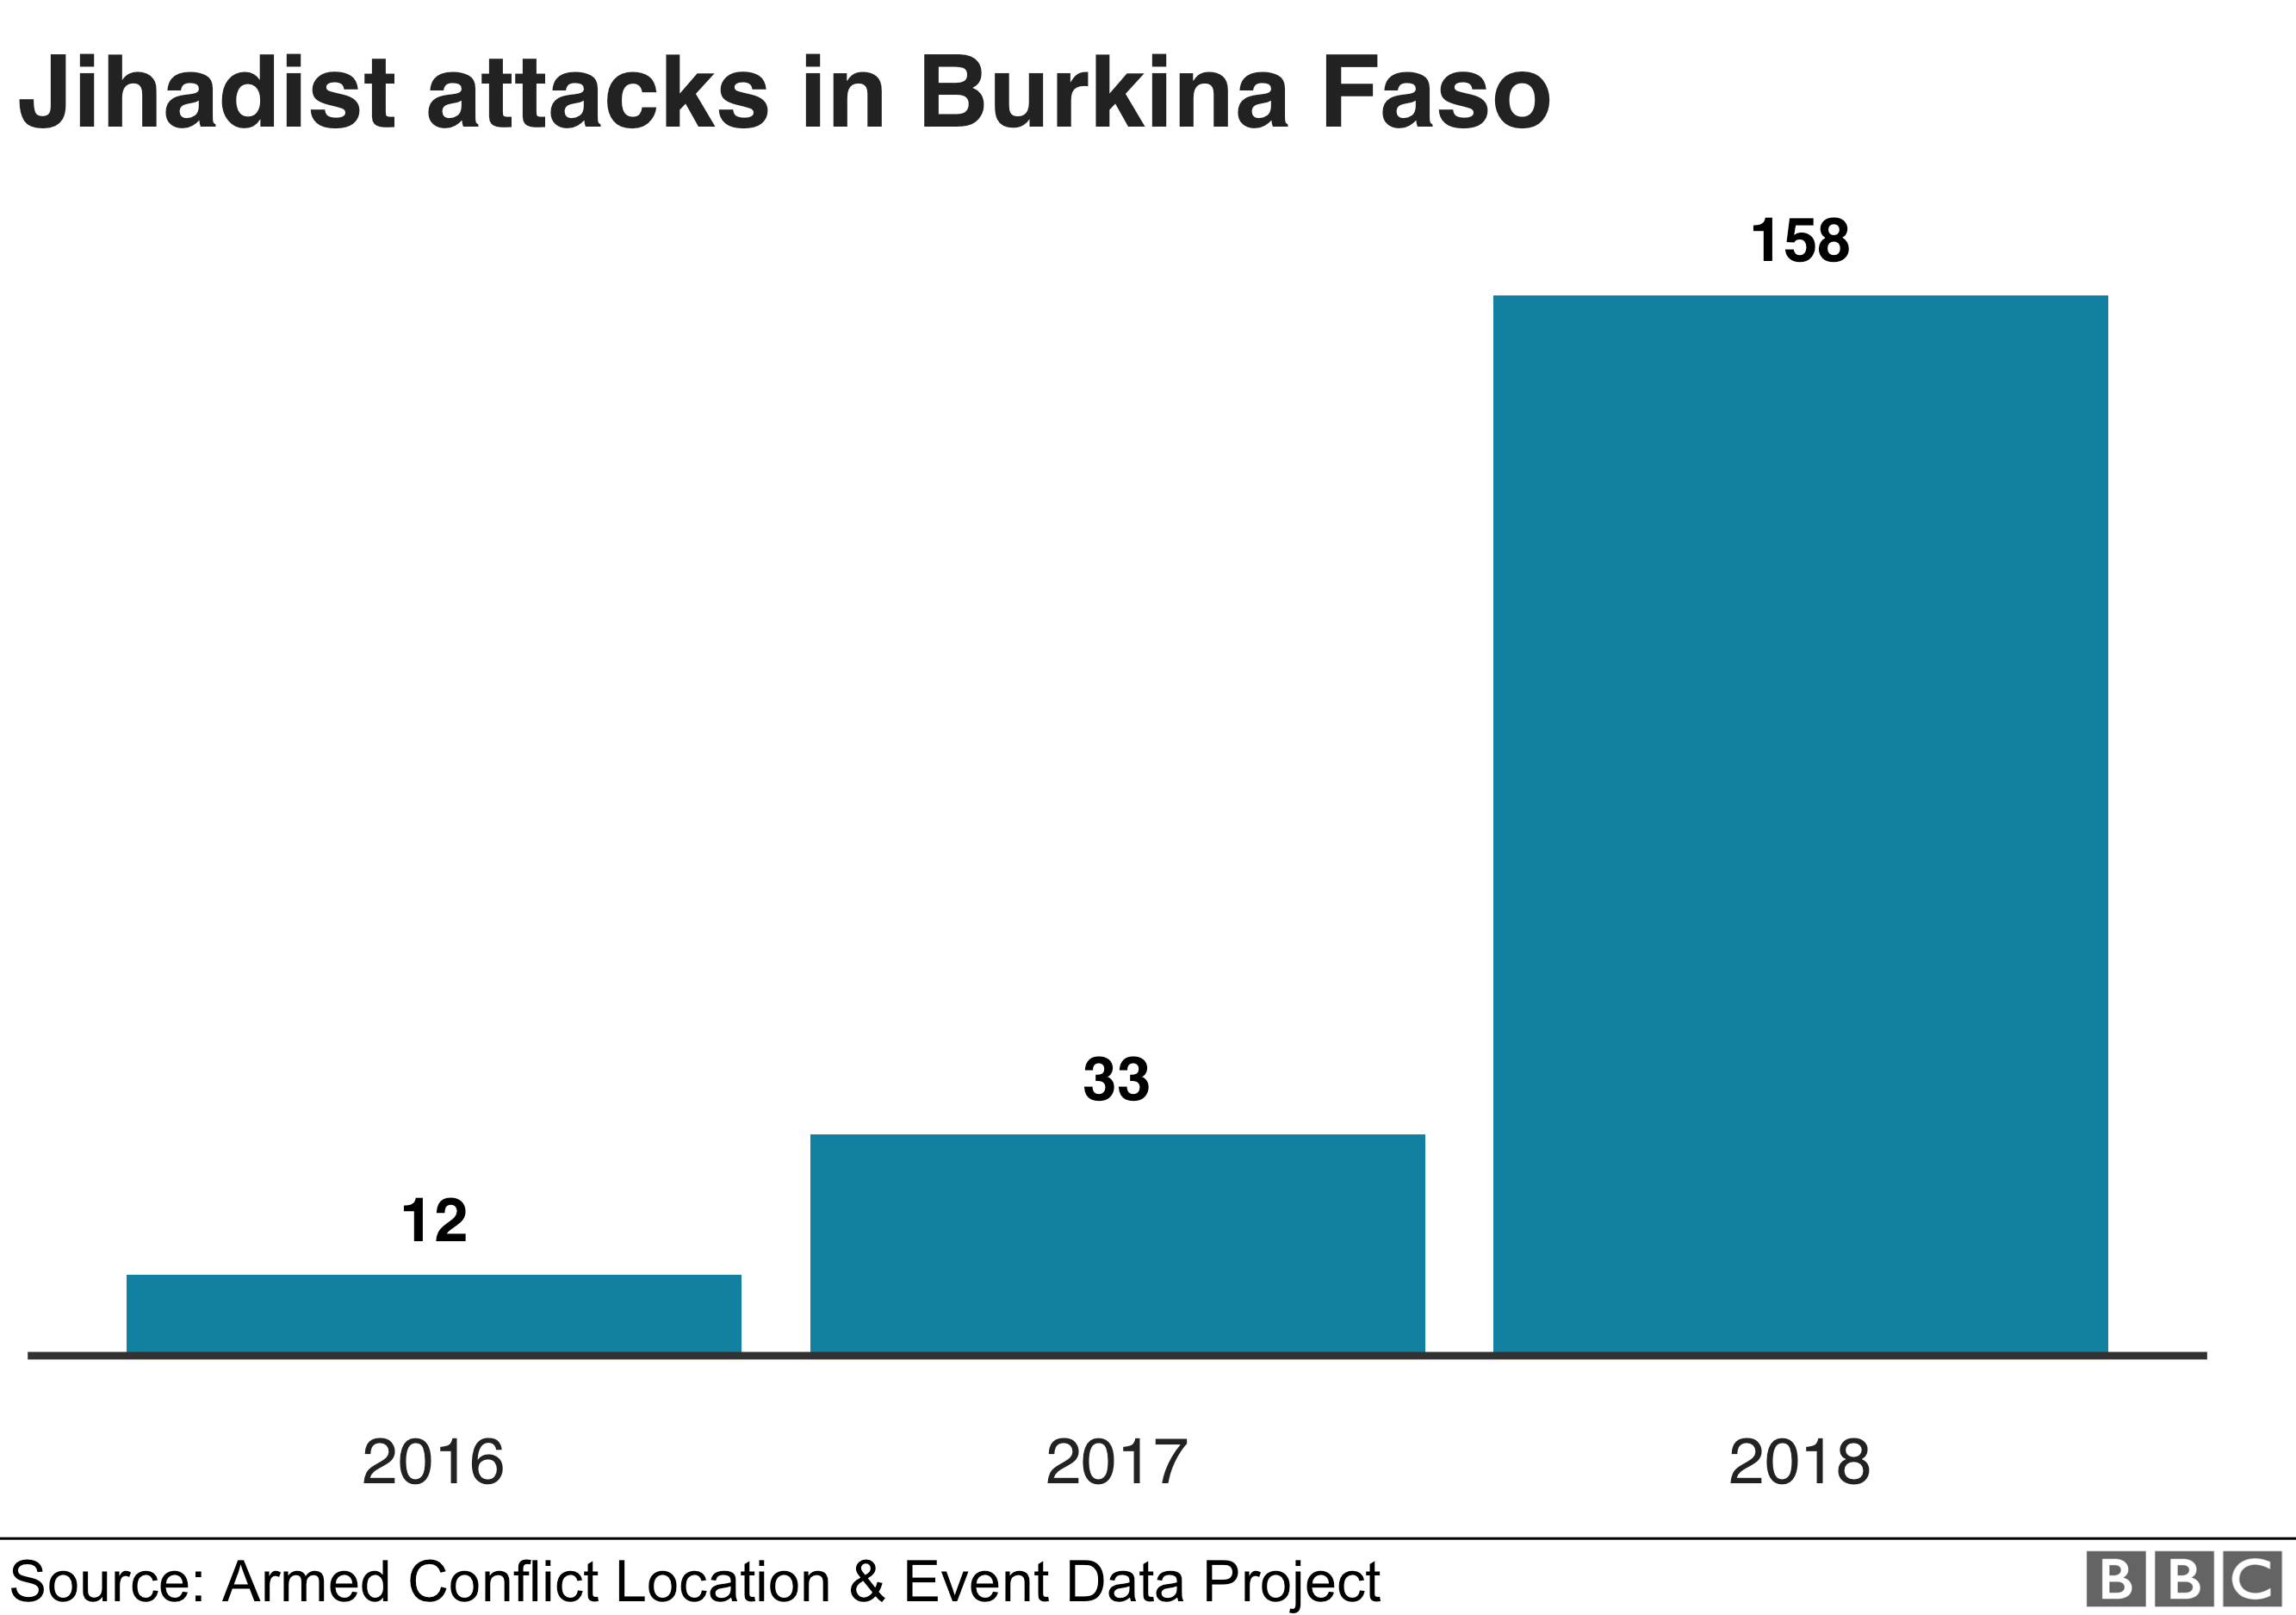 Графика нападений джихадистов в Буркина-Фасо